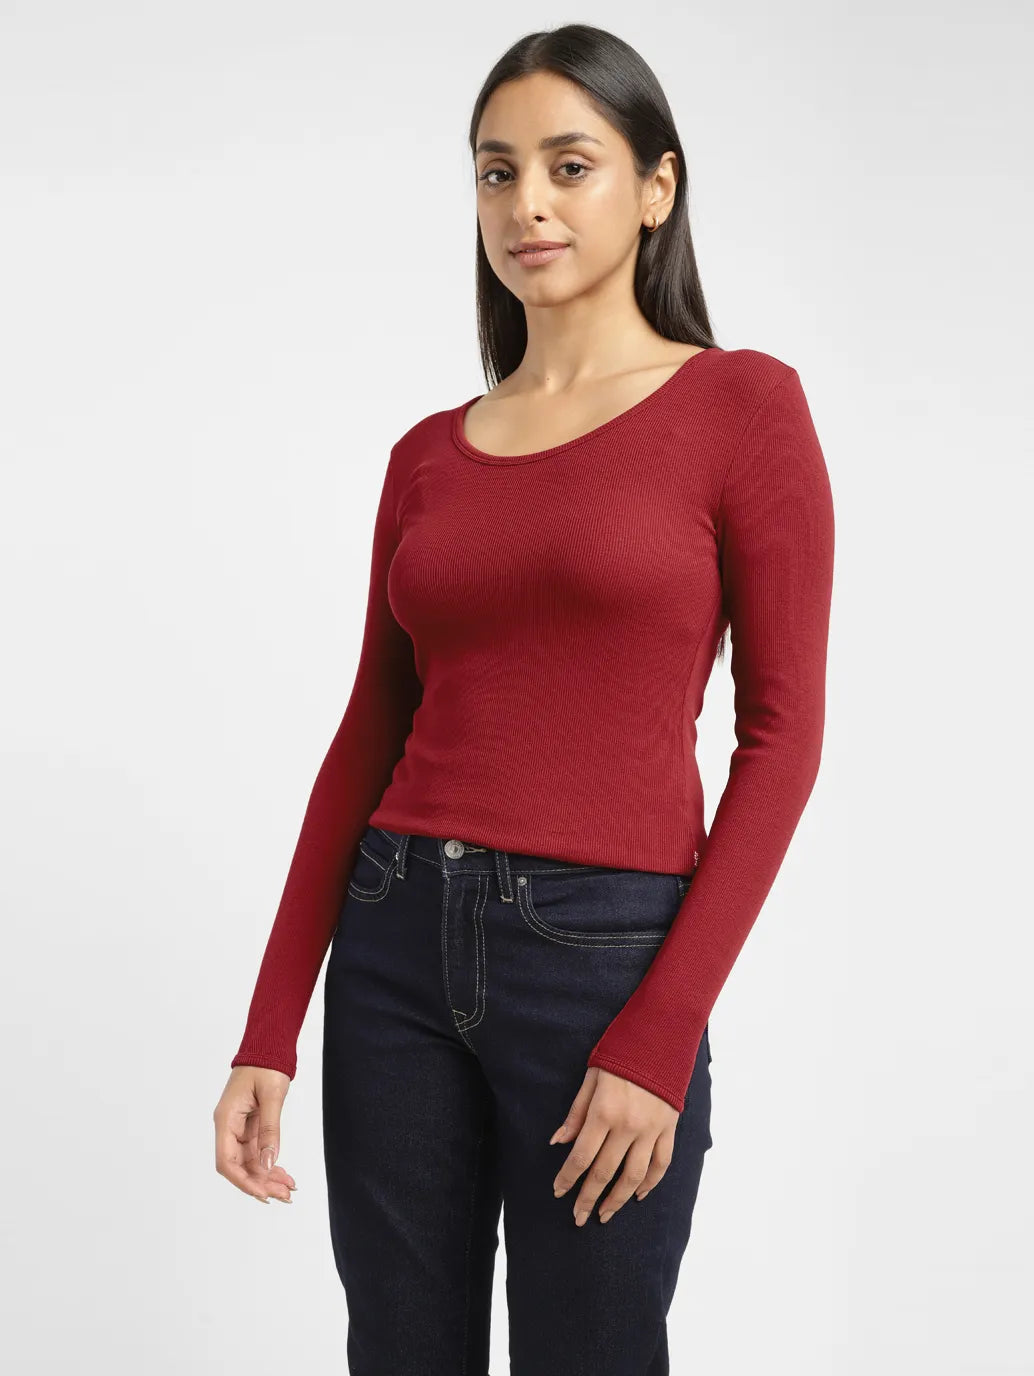 Bonds Women's Comfy Seamless Crop - Red - Size XXL, BIG W